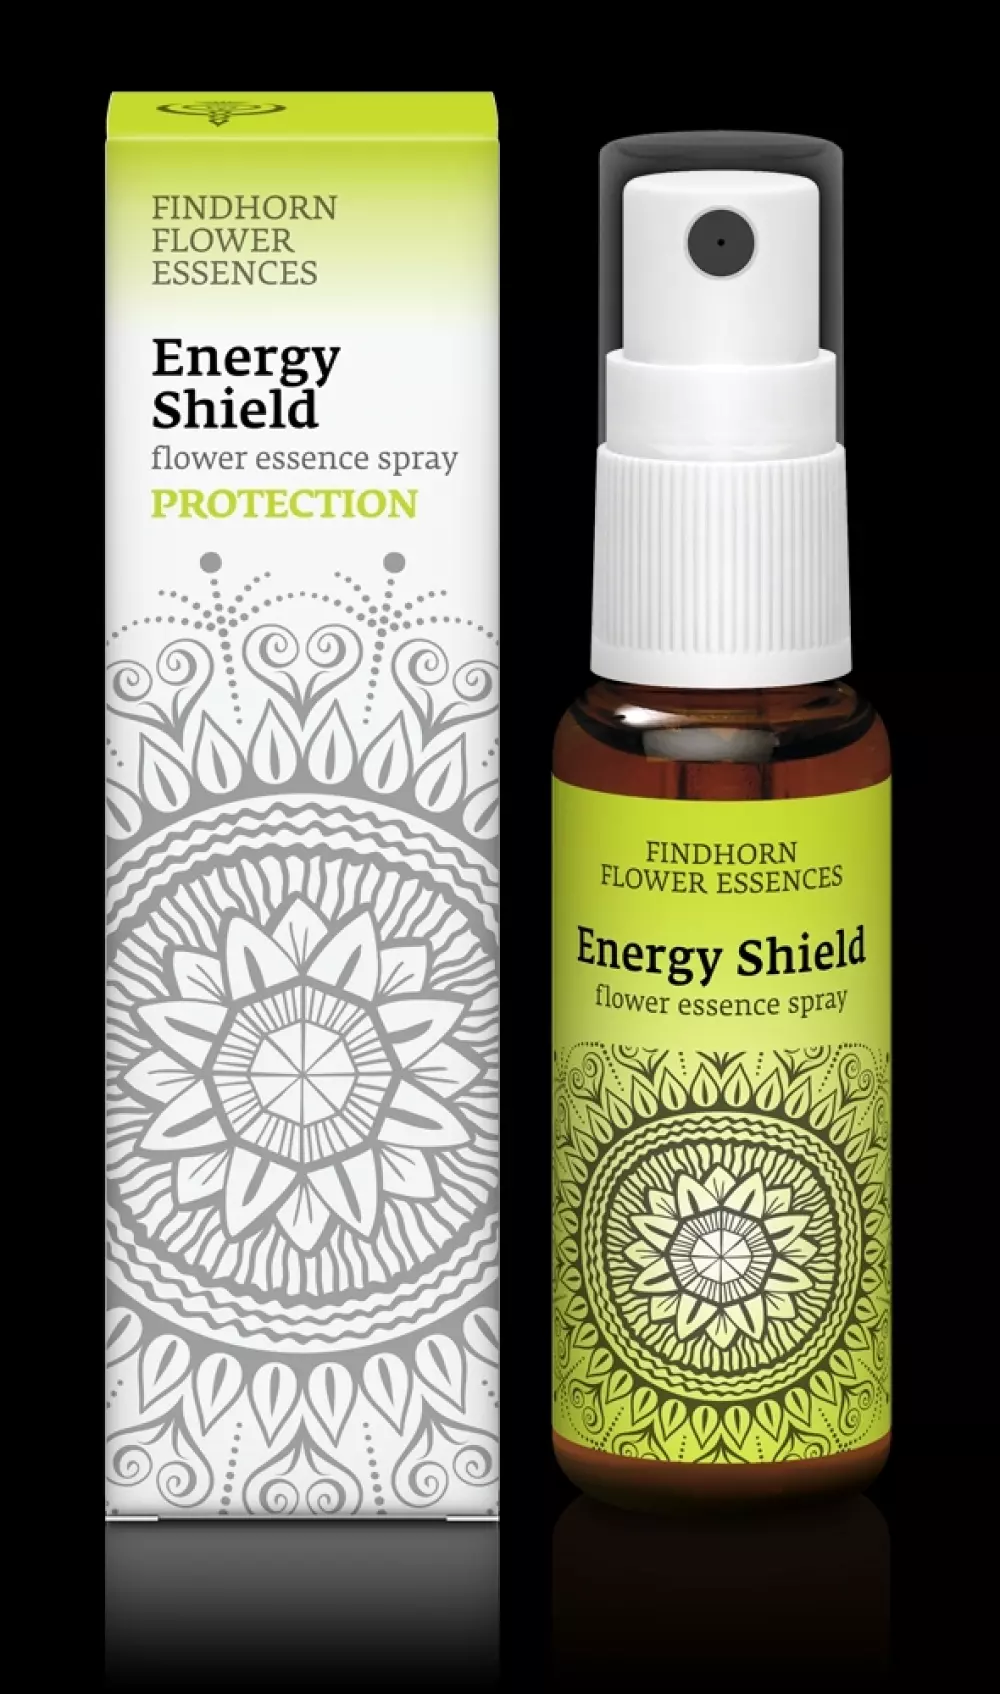 Findhorn - Energy Shield 25 ml spray, Velvære & røkelse, Essenser (Vibrasjonell medisin), flower essence spray - Protection